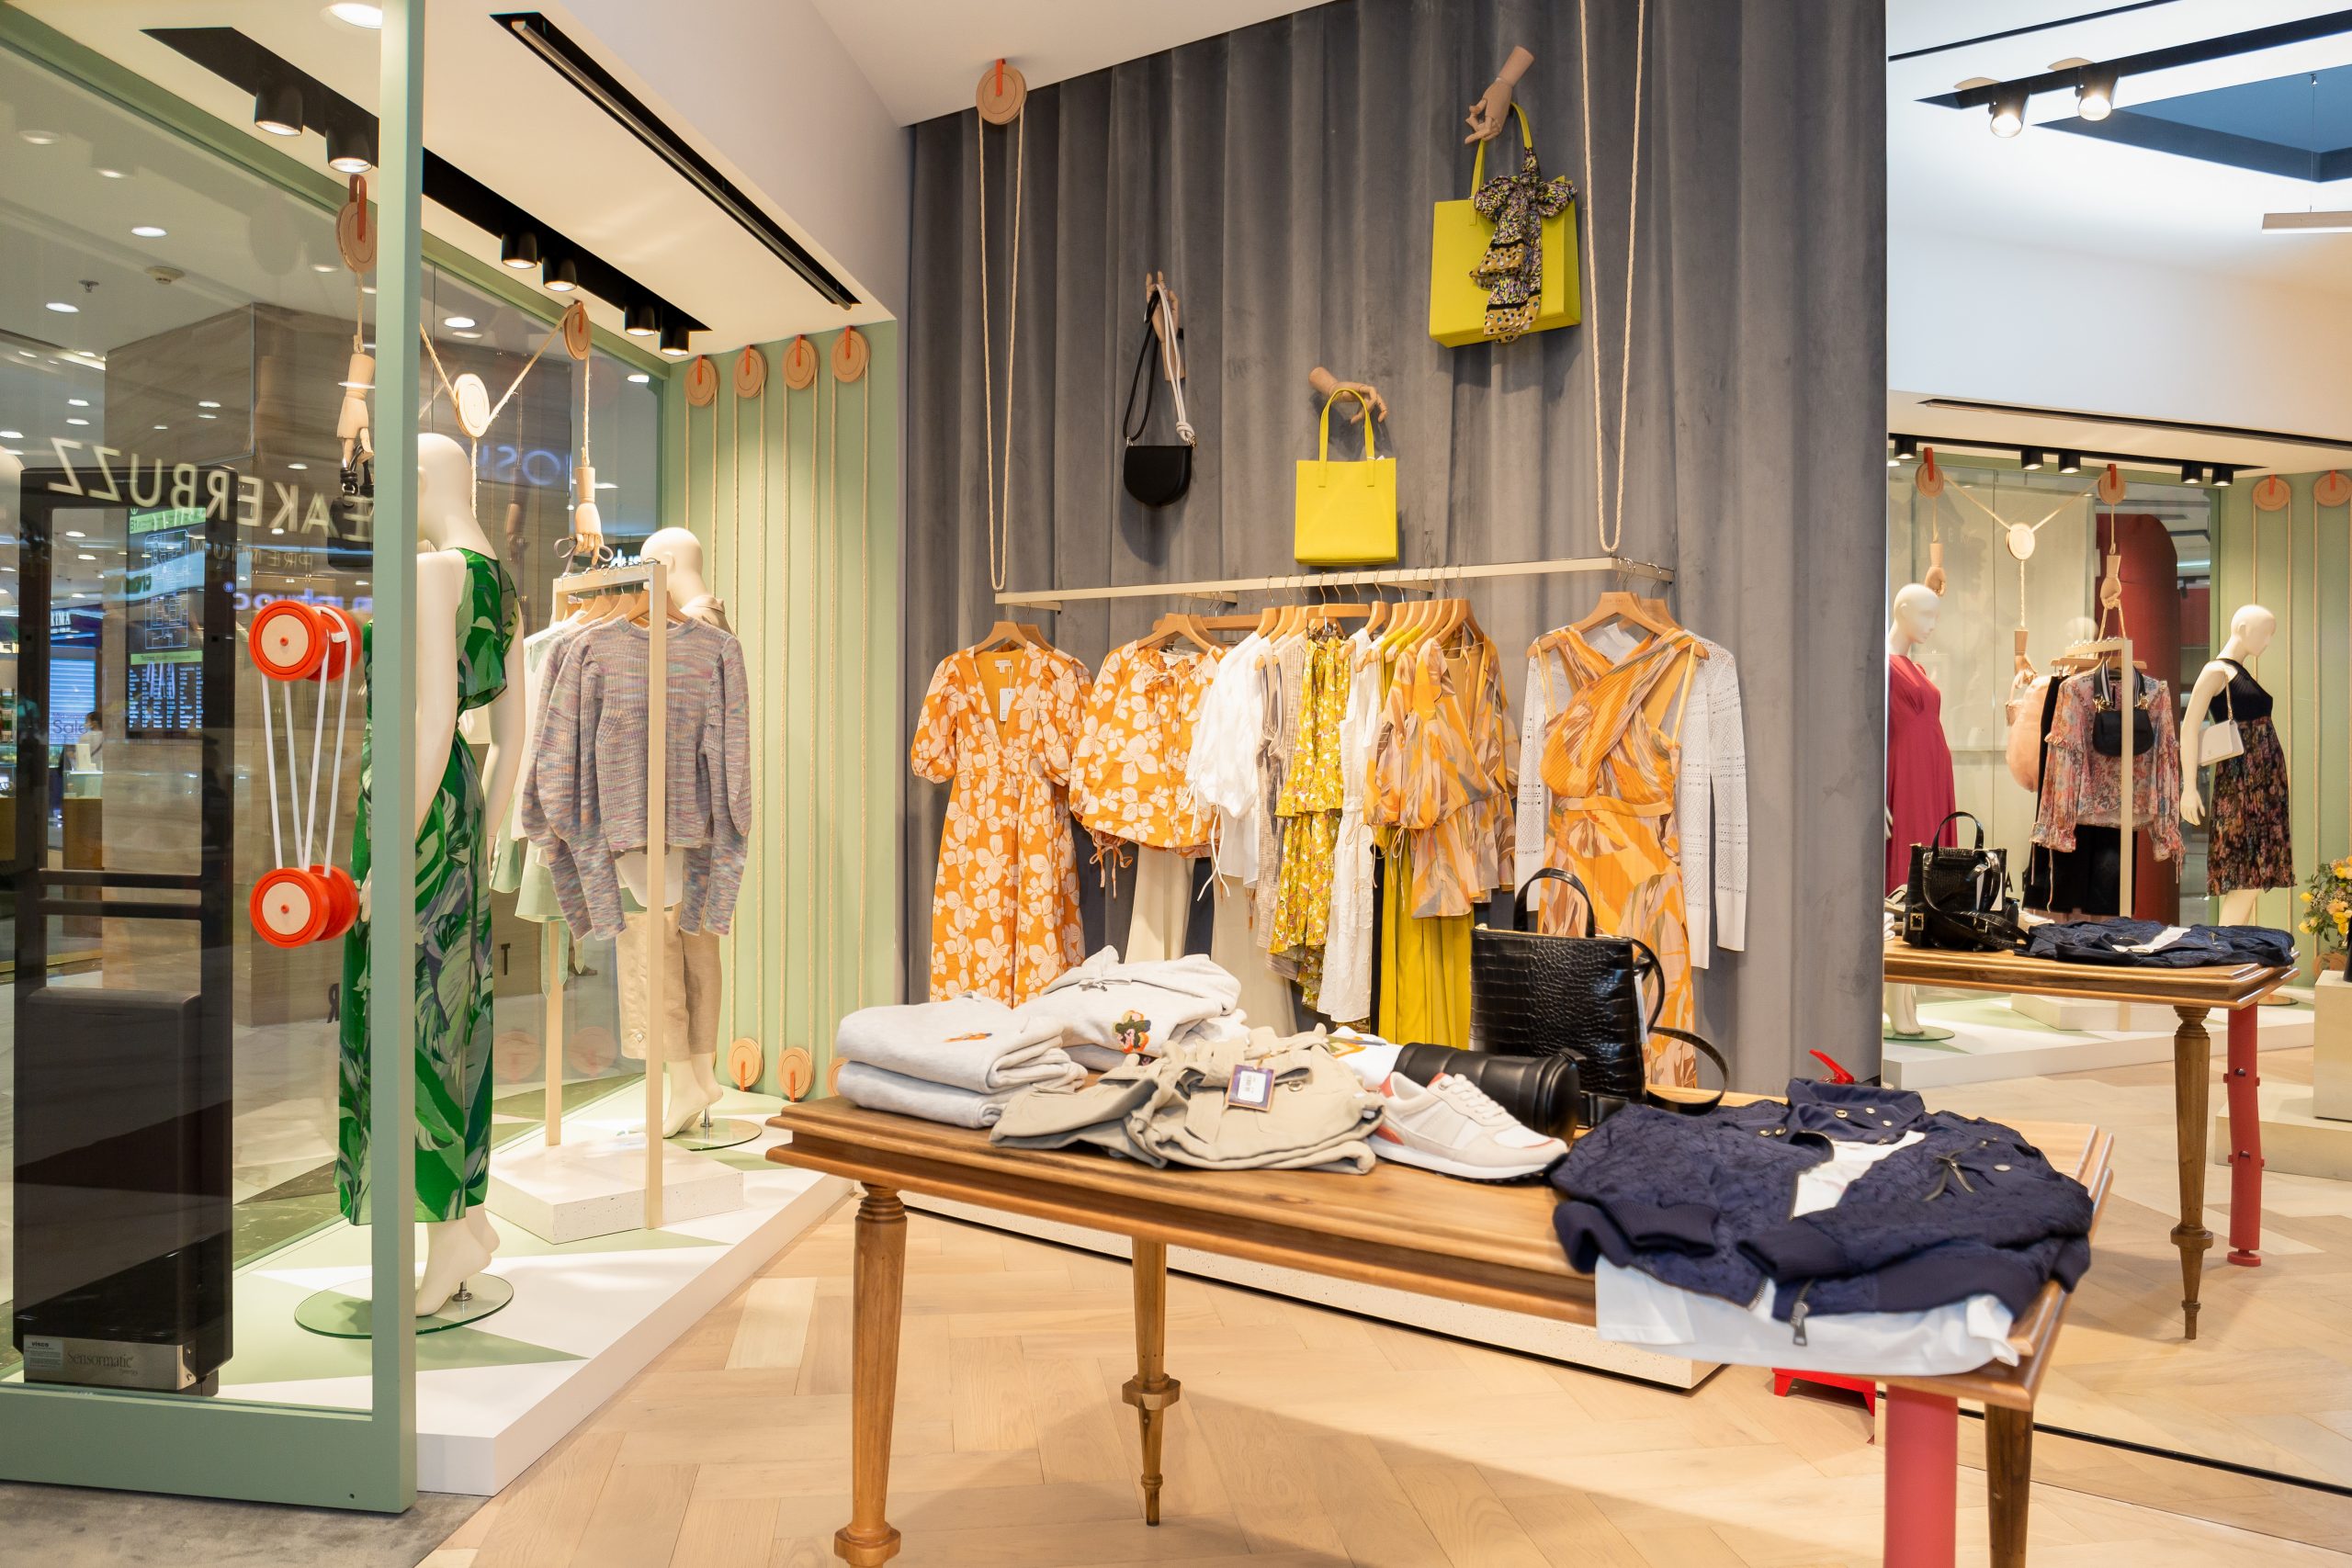 Harper's Bazaar_Ted Baker khai trương cửa hàng ở Vincom Đồng Khởi